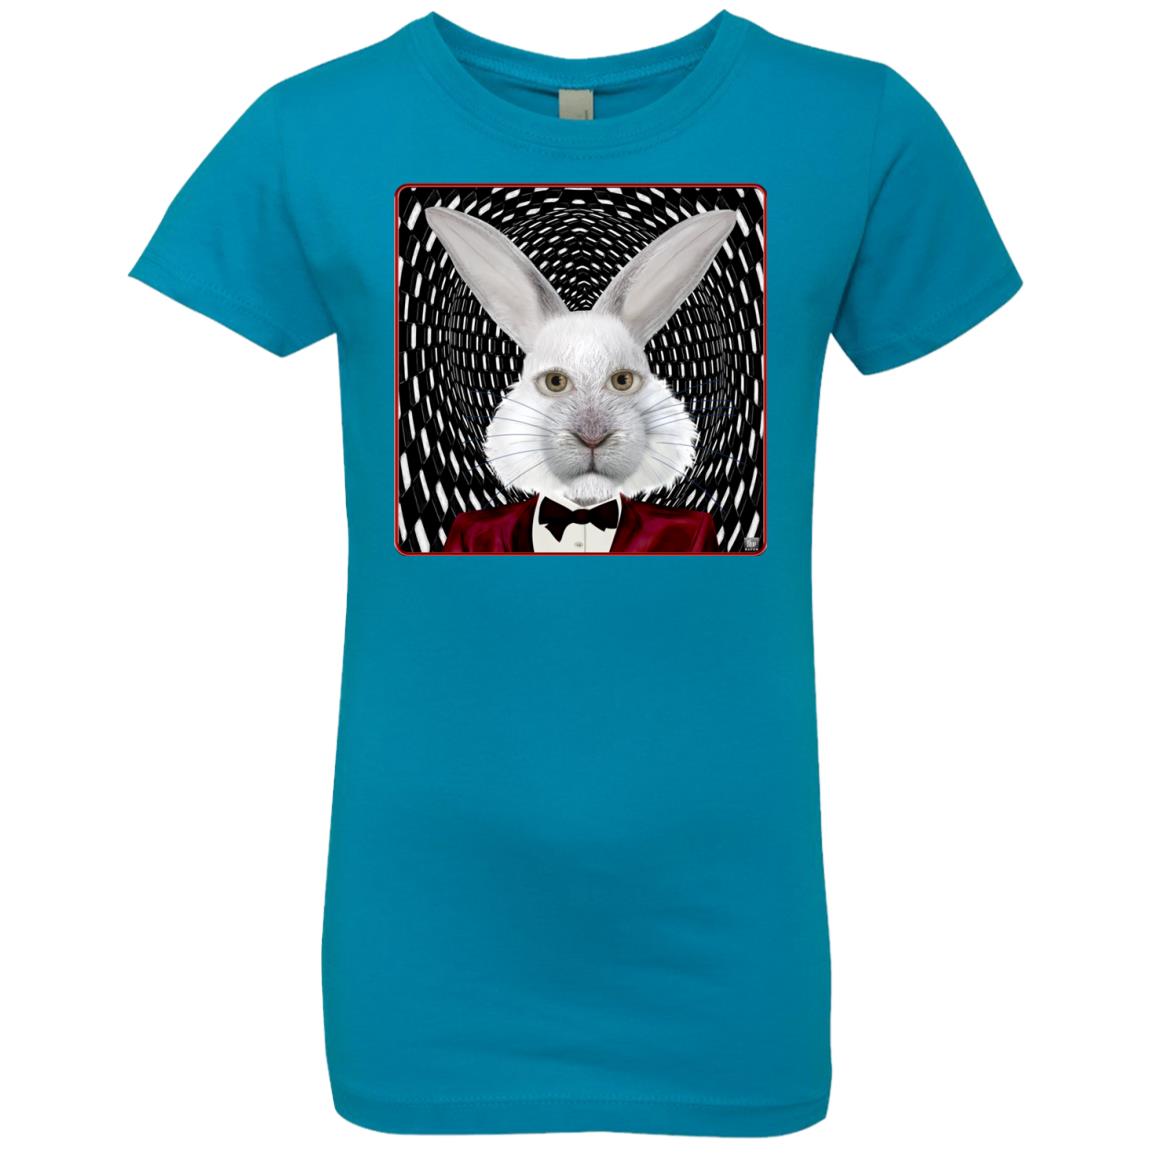 the white rabbit - Girl's Premium Cotton T-Shirt